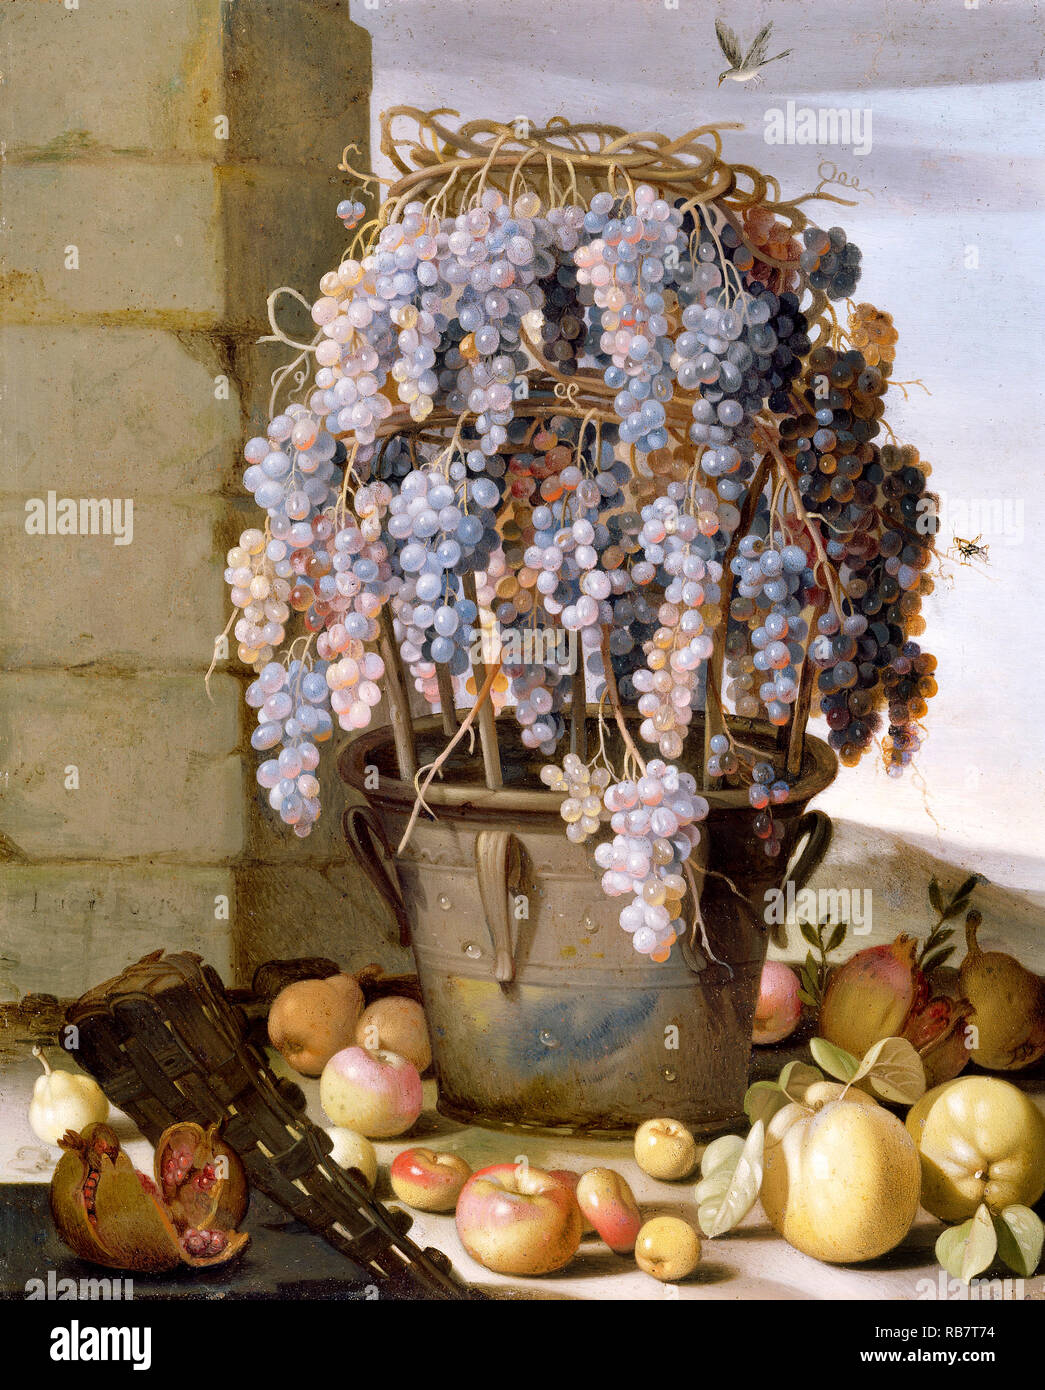 Lovis Corinth, Stillleben mit Trauben und andere Früchte, ca. 1630, Öl auf Kupfer, das J. Paul Getty Museum, Los Angeles, USA. Stockfoto